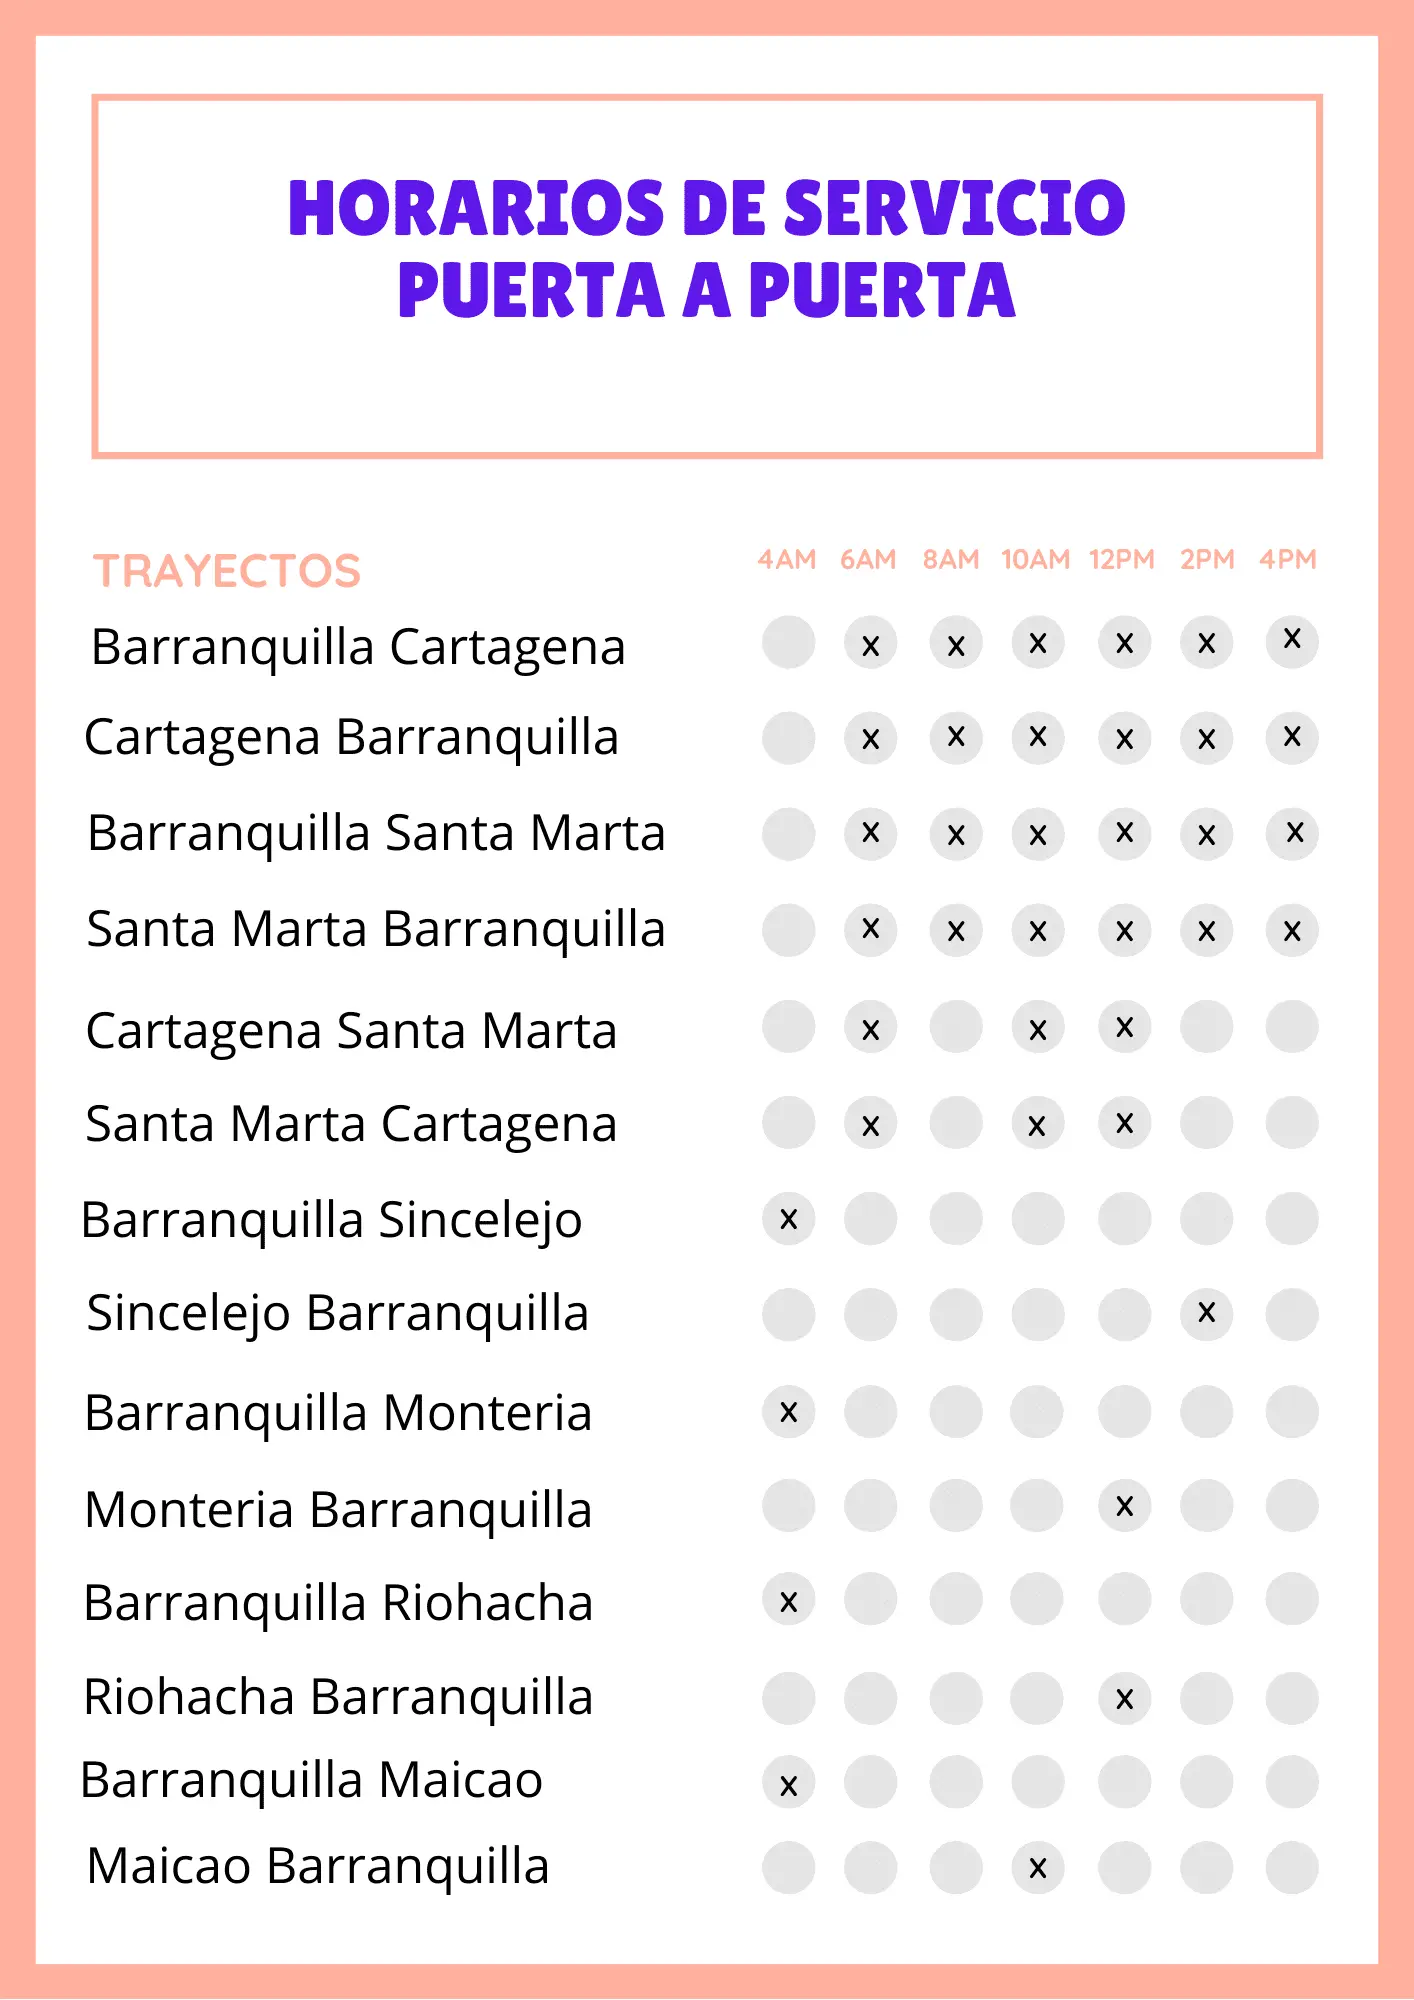 costos de fletes de santa marta a barranquilla - Cuánto vale transporte de Santa Marta a Barranquilla